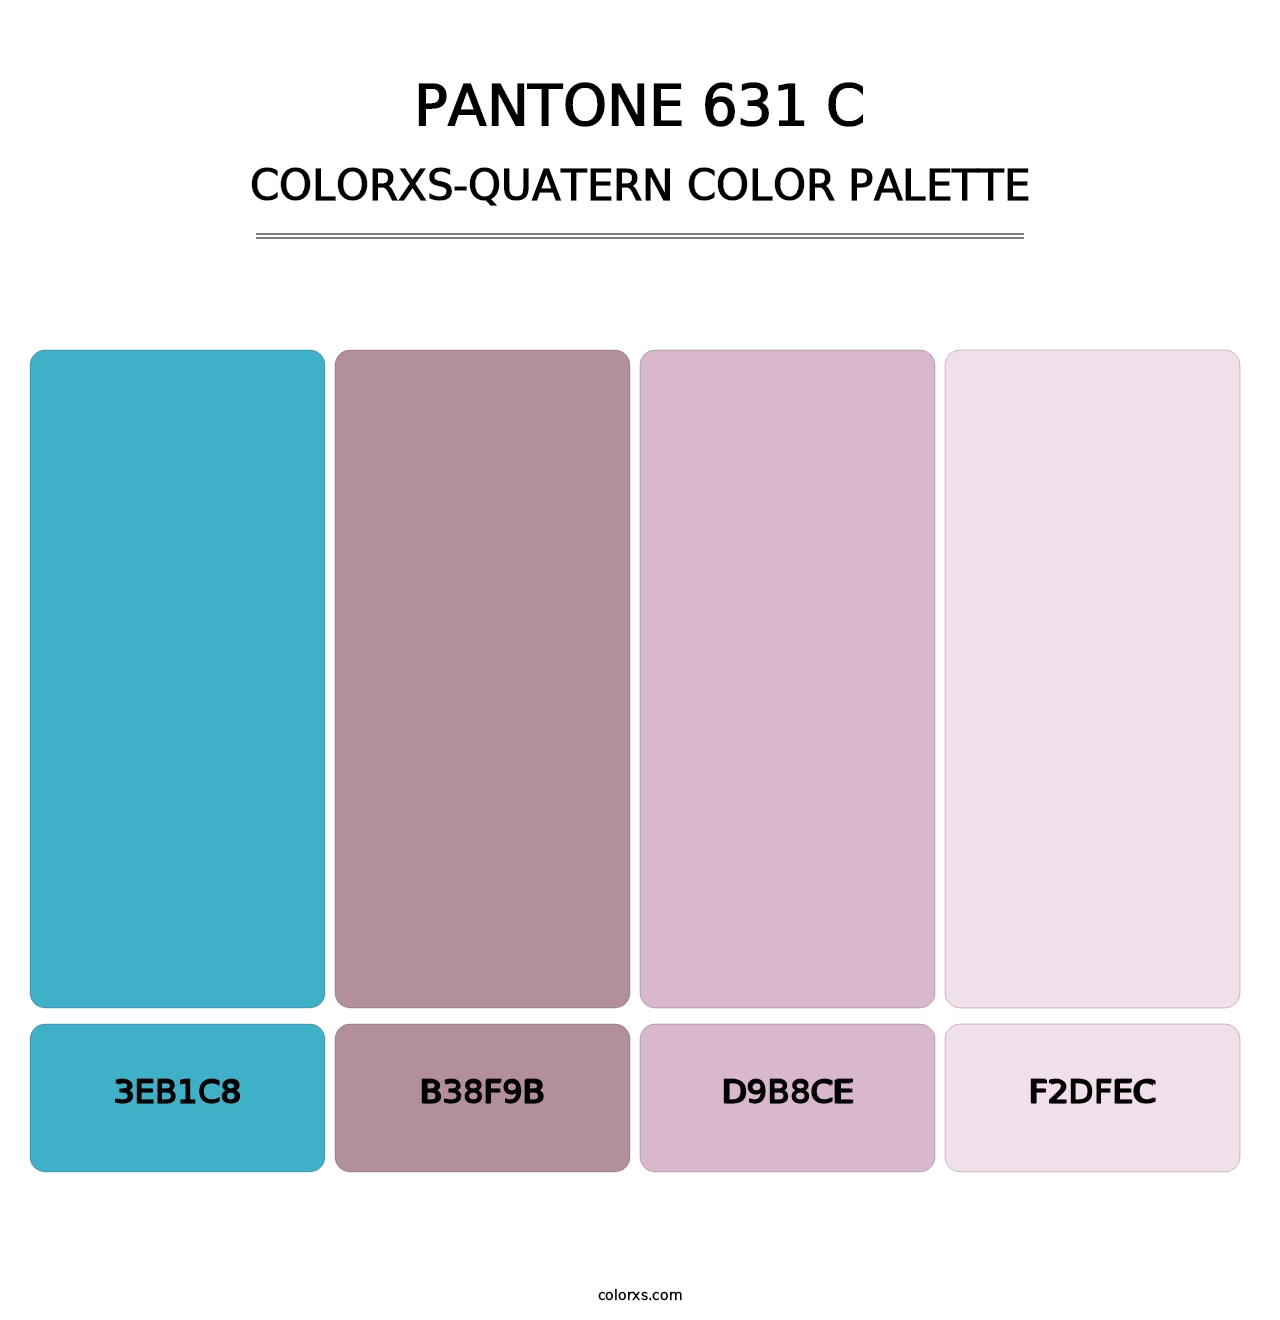 PANTONE 631 C - Colorxs Quatern Palette